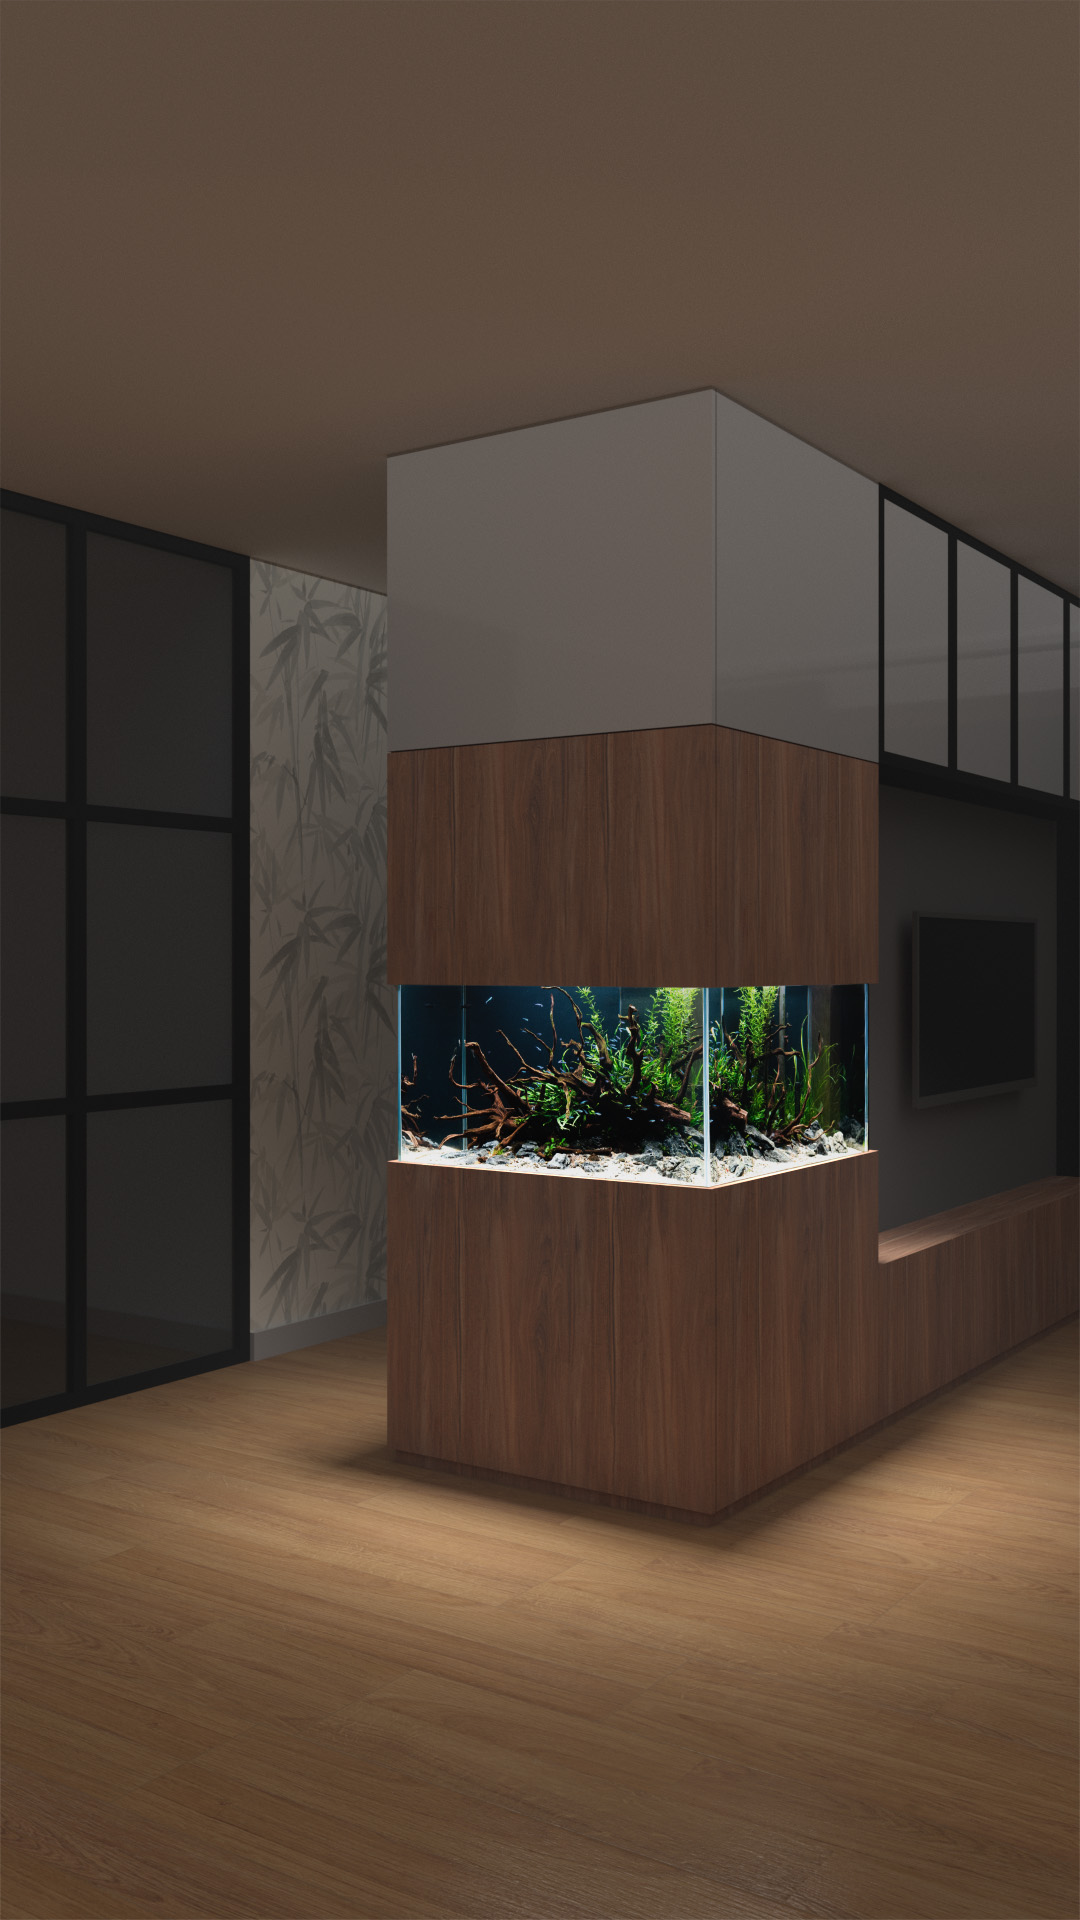 Budowa akwarium narożnego. W otwartych przestrzeniach i półściankach meblowych to ciekawe rozwiązanie optycznie powiększające akwarium.